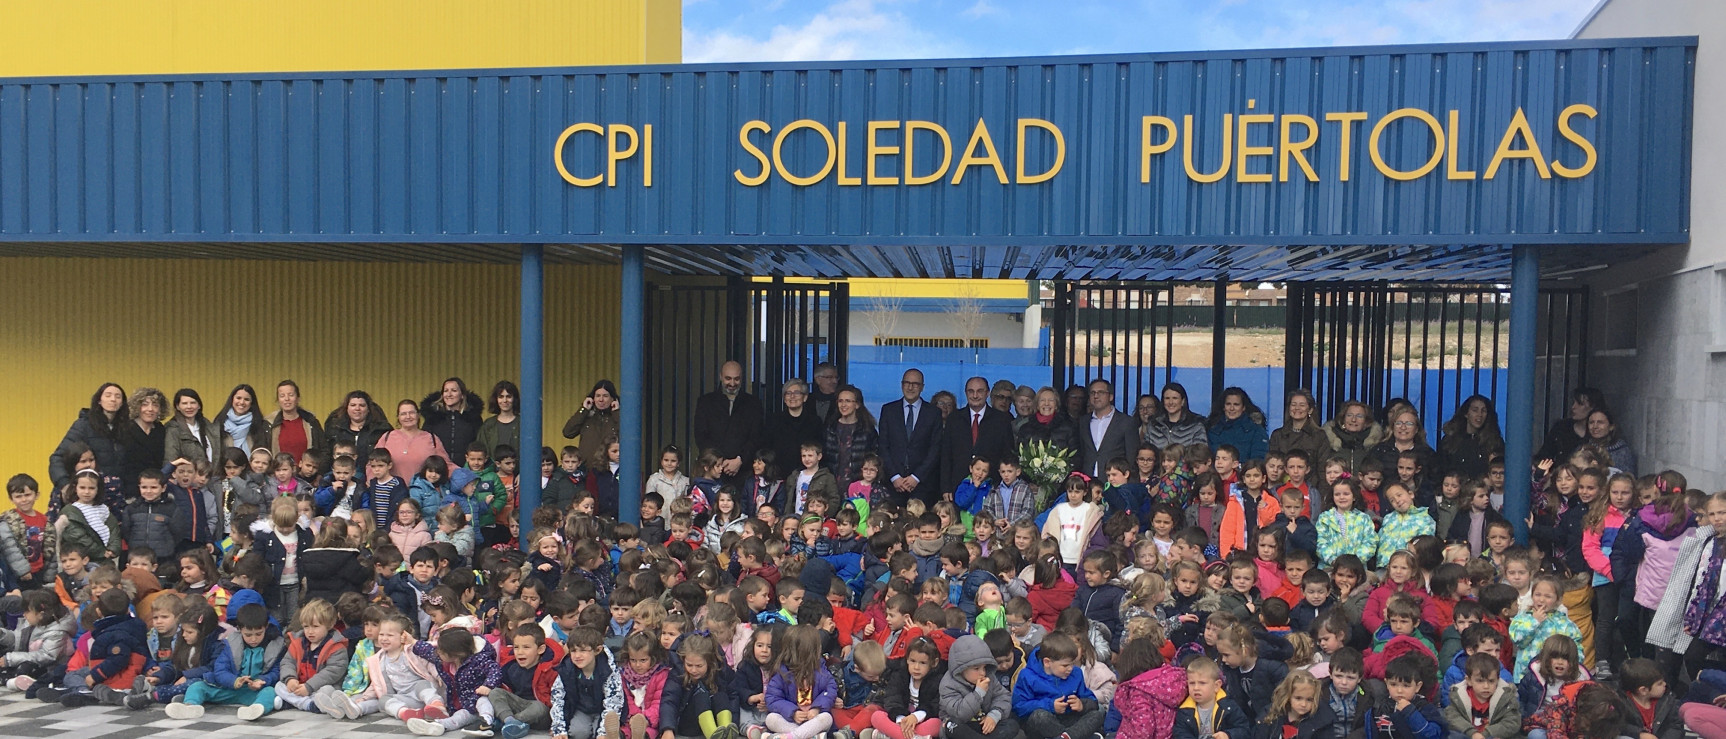 Inauguración del colegio Soledad Puértolas en Zaragoza.